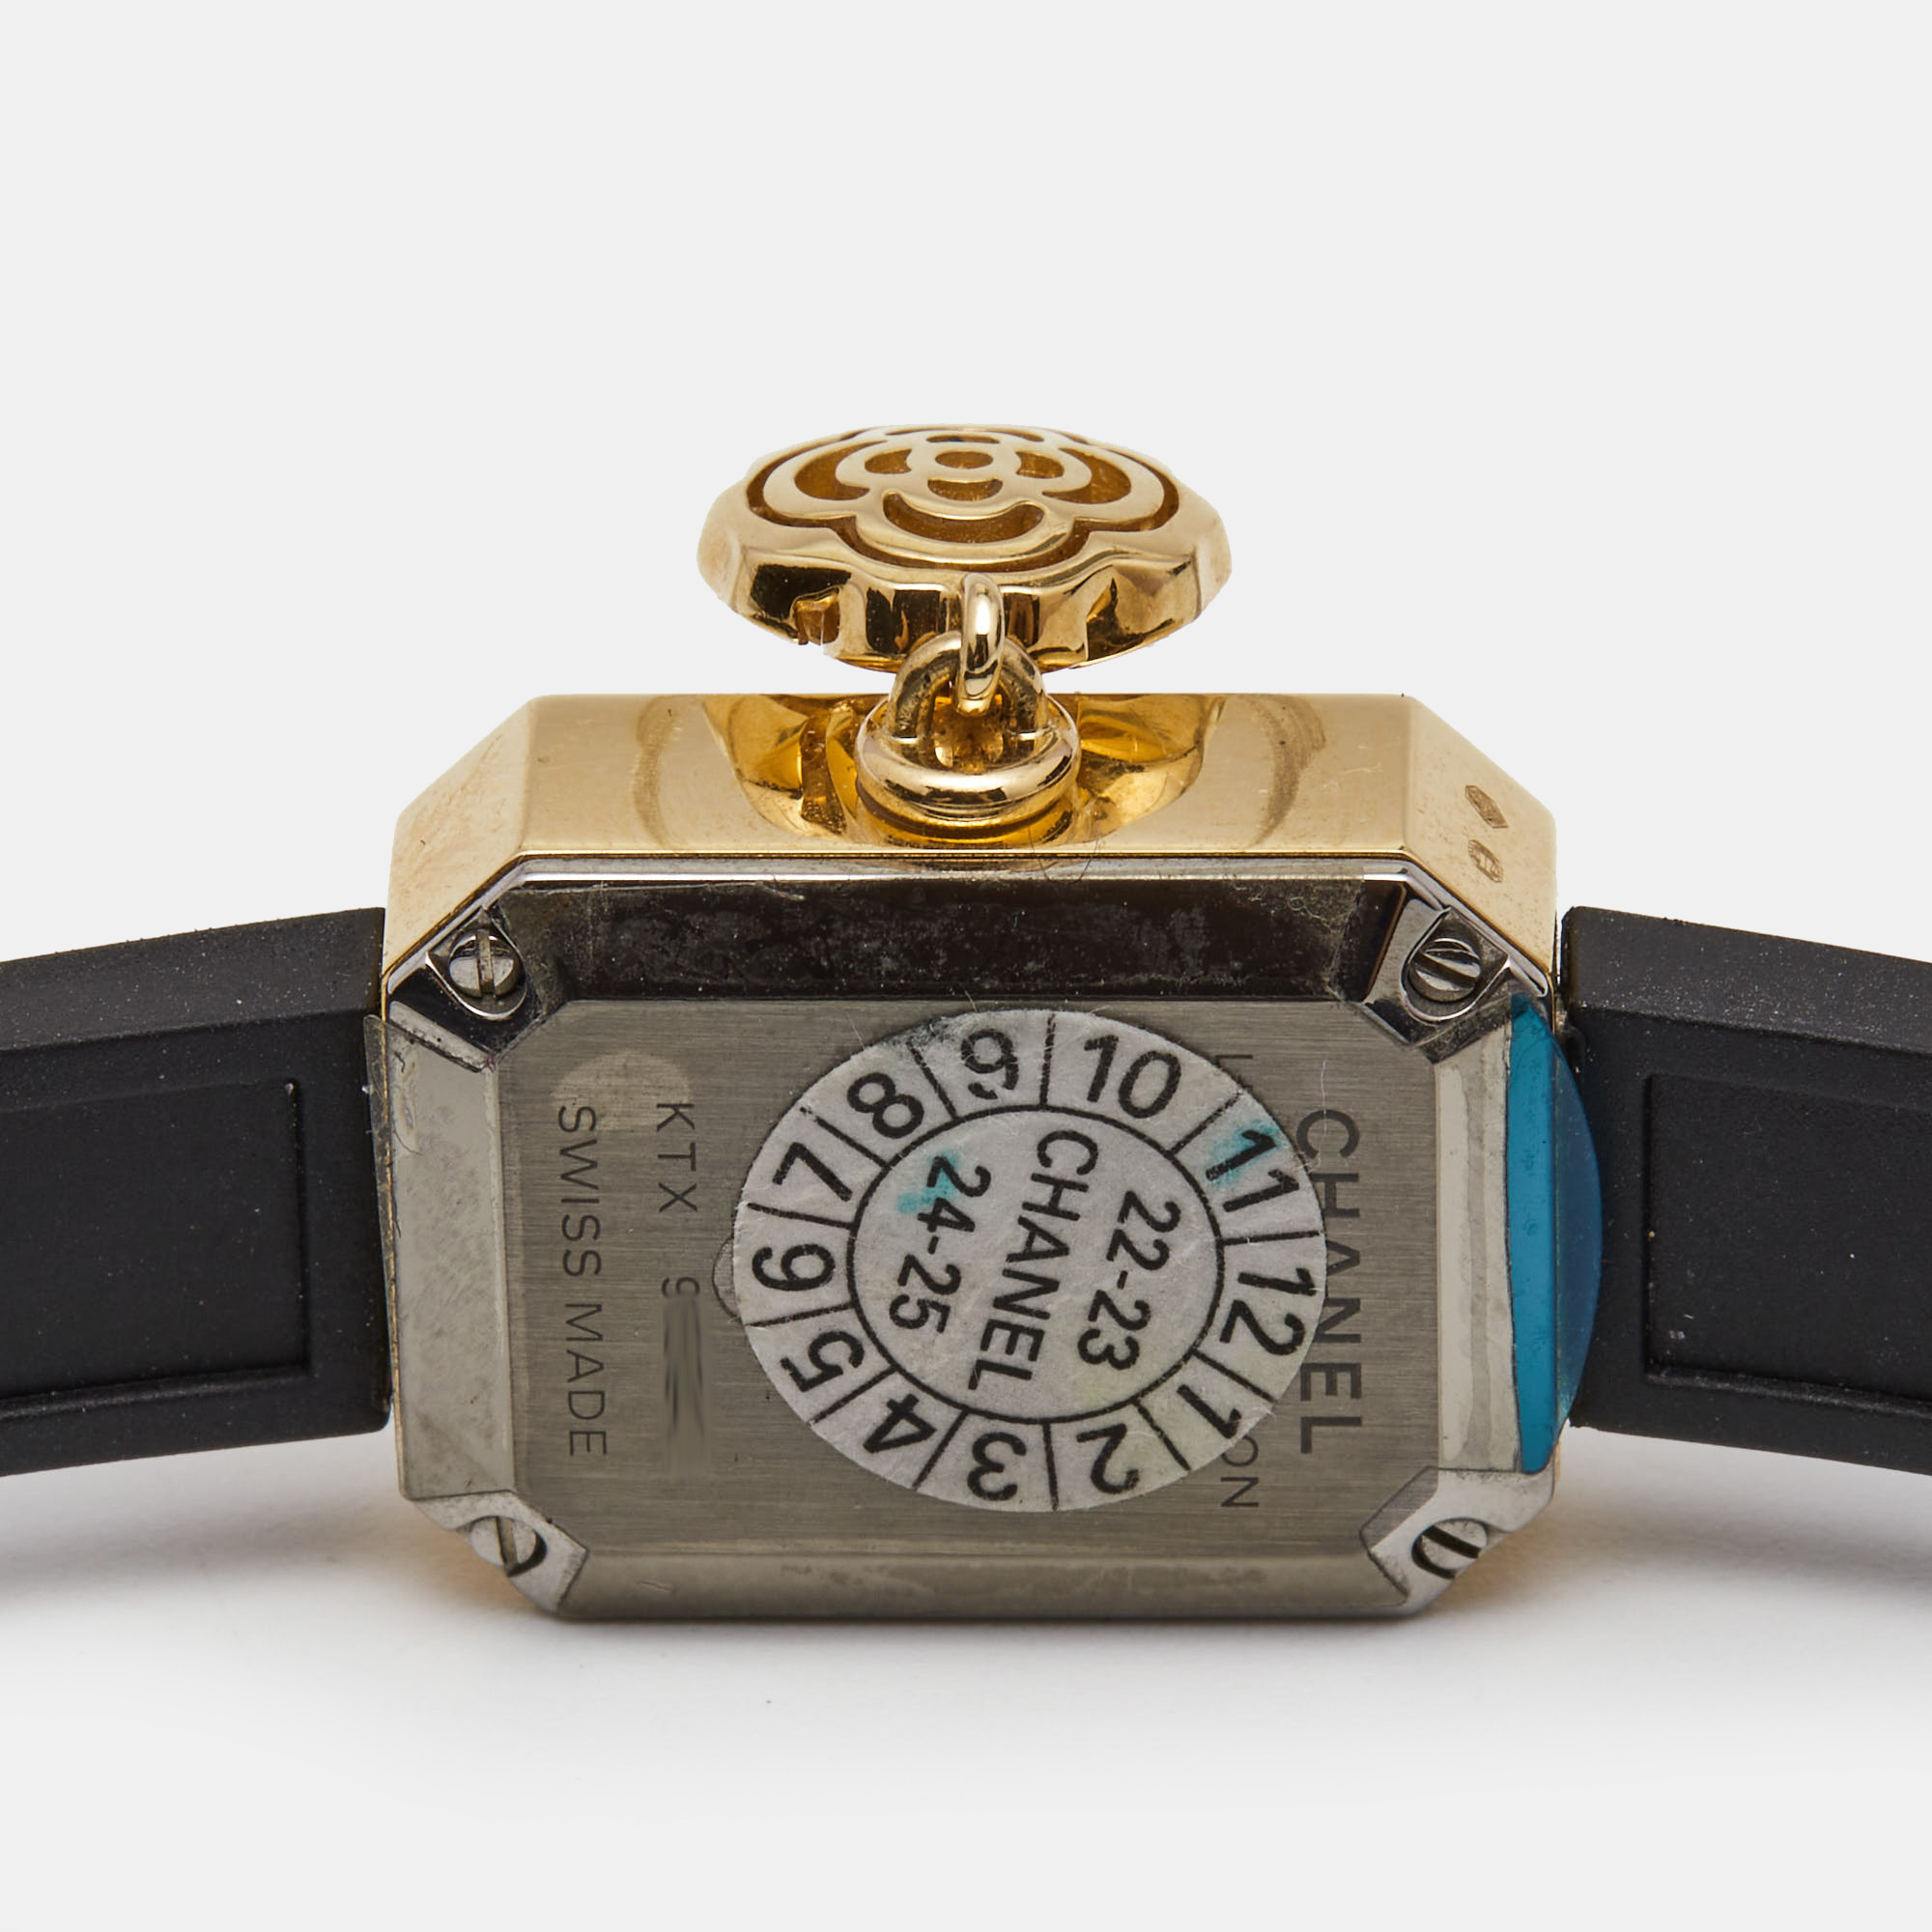 Chanel Black 18k Yellow Gold Diamond Rubber Première Extrait De Camélia H6361 Women's Wristwatch 15.2 X 19.7 Mm